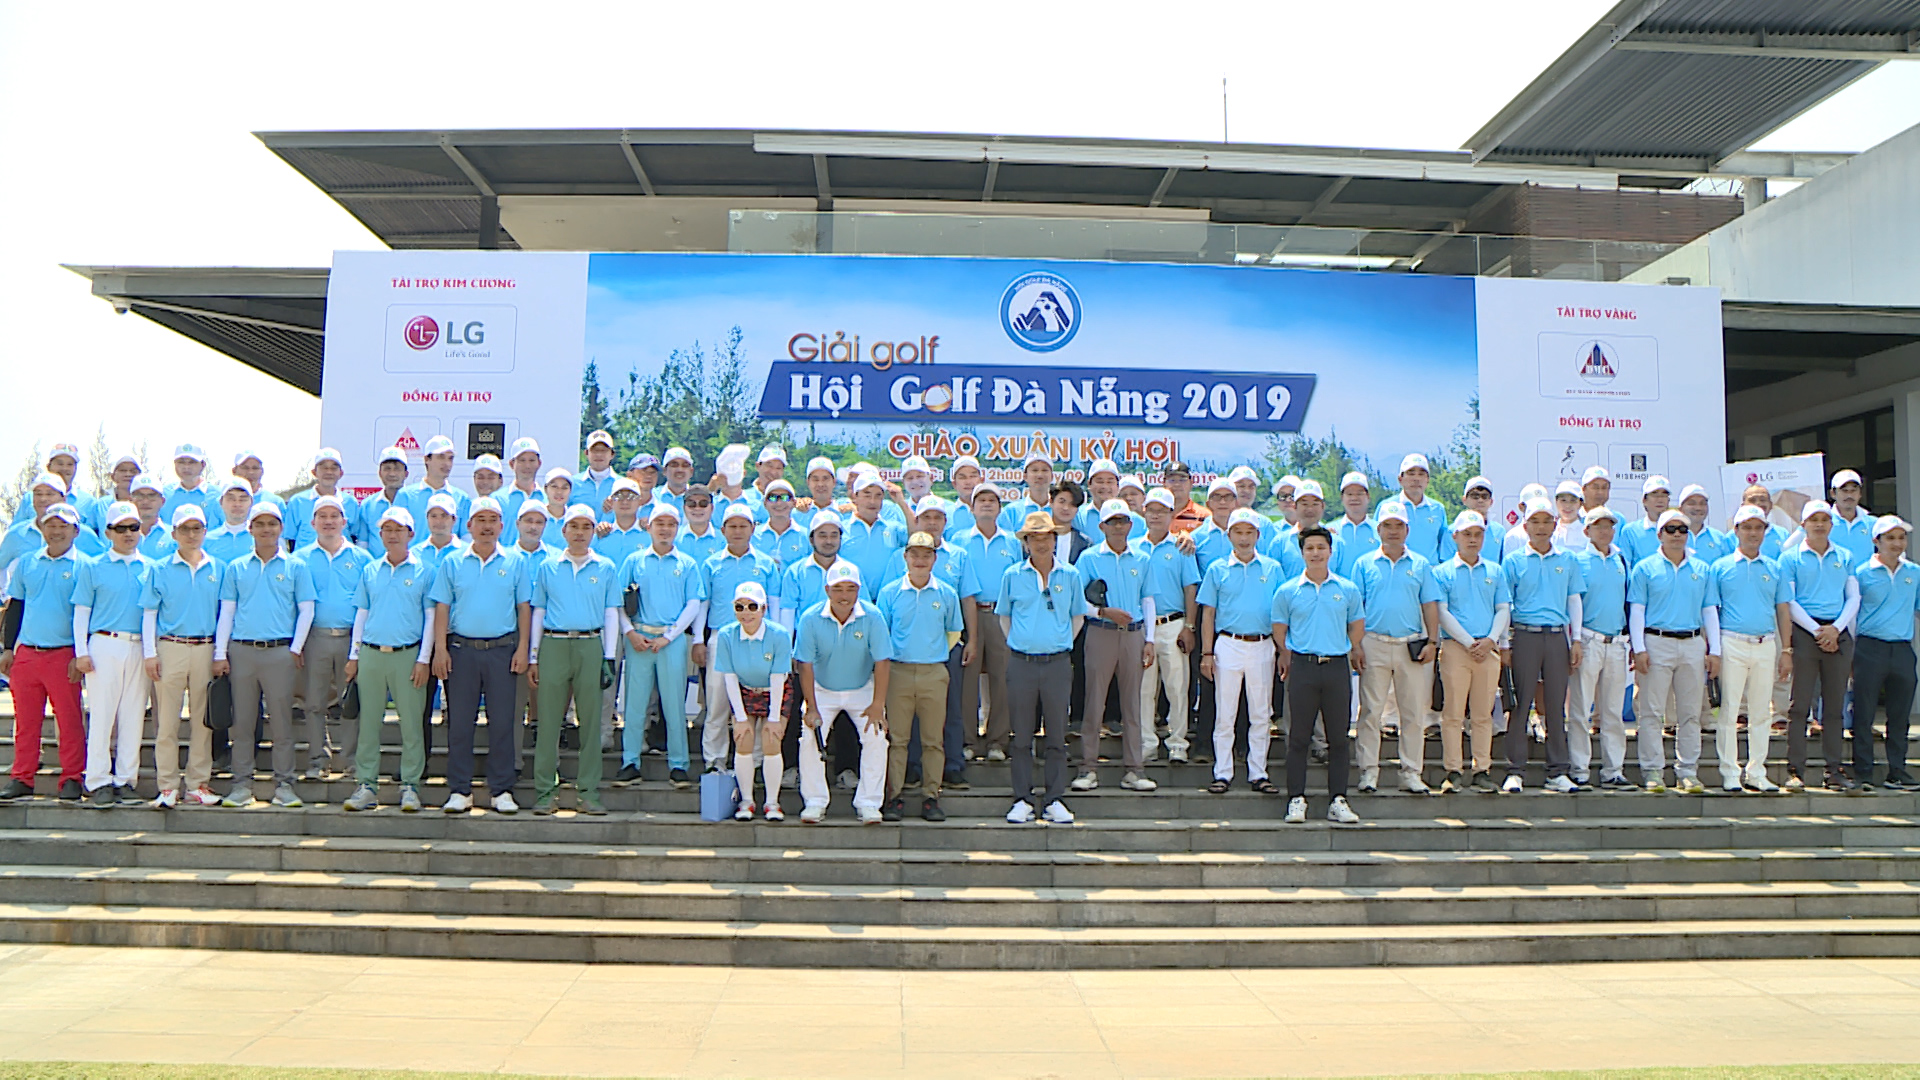 Giải golf Hội golf Thành phố Đà Nẵng 2019 Chào xuân Kỷ Hợi